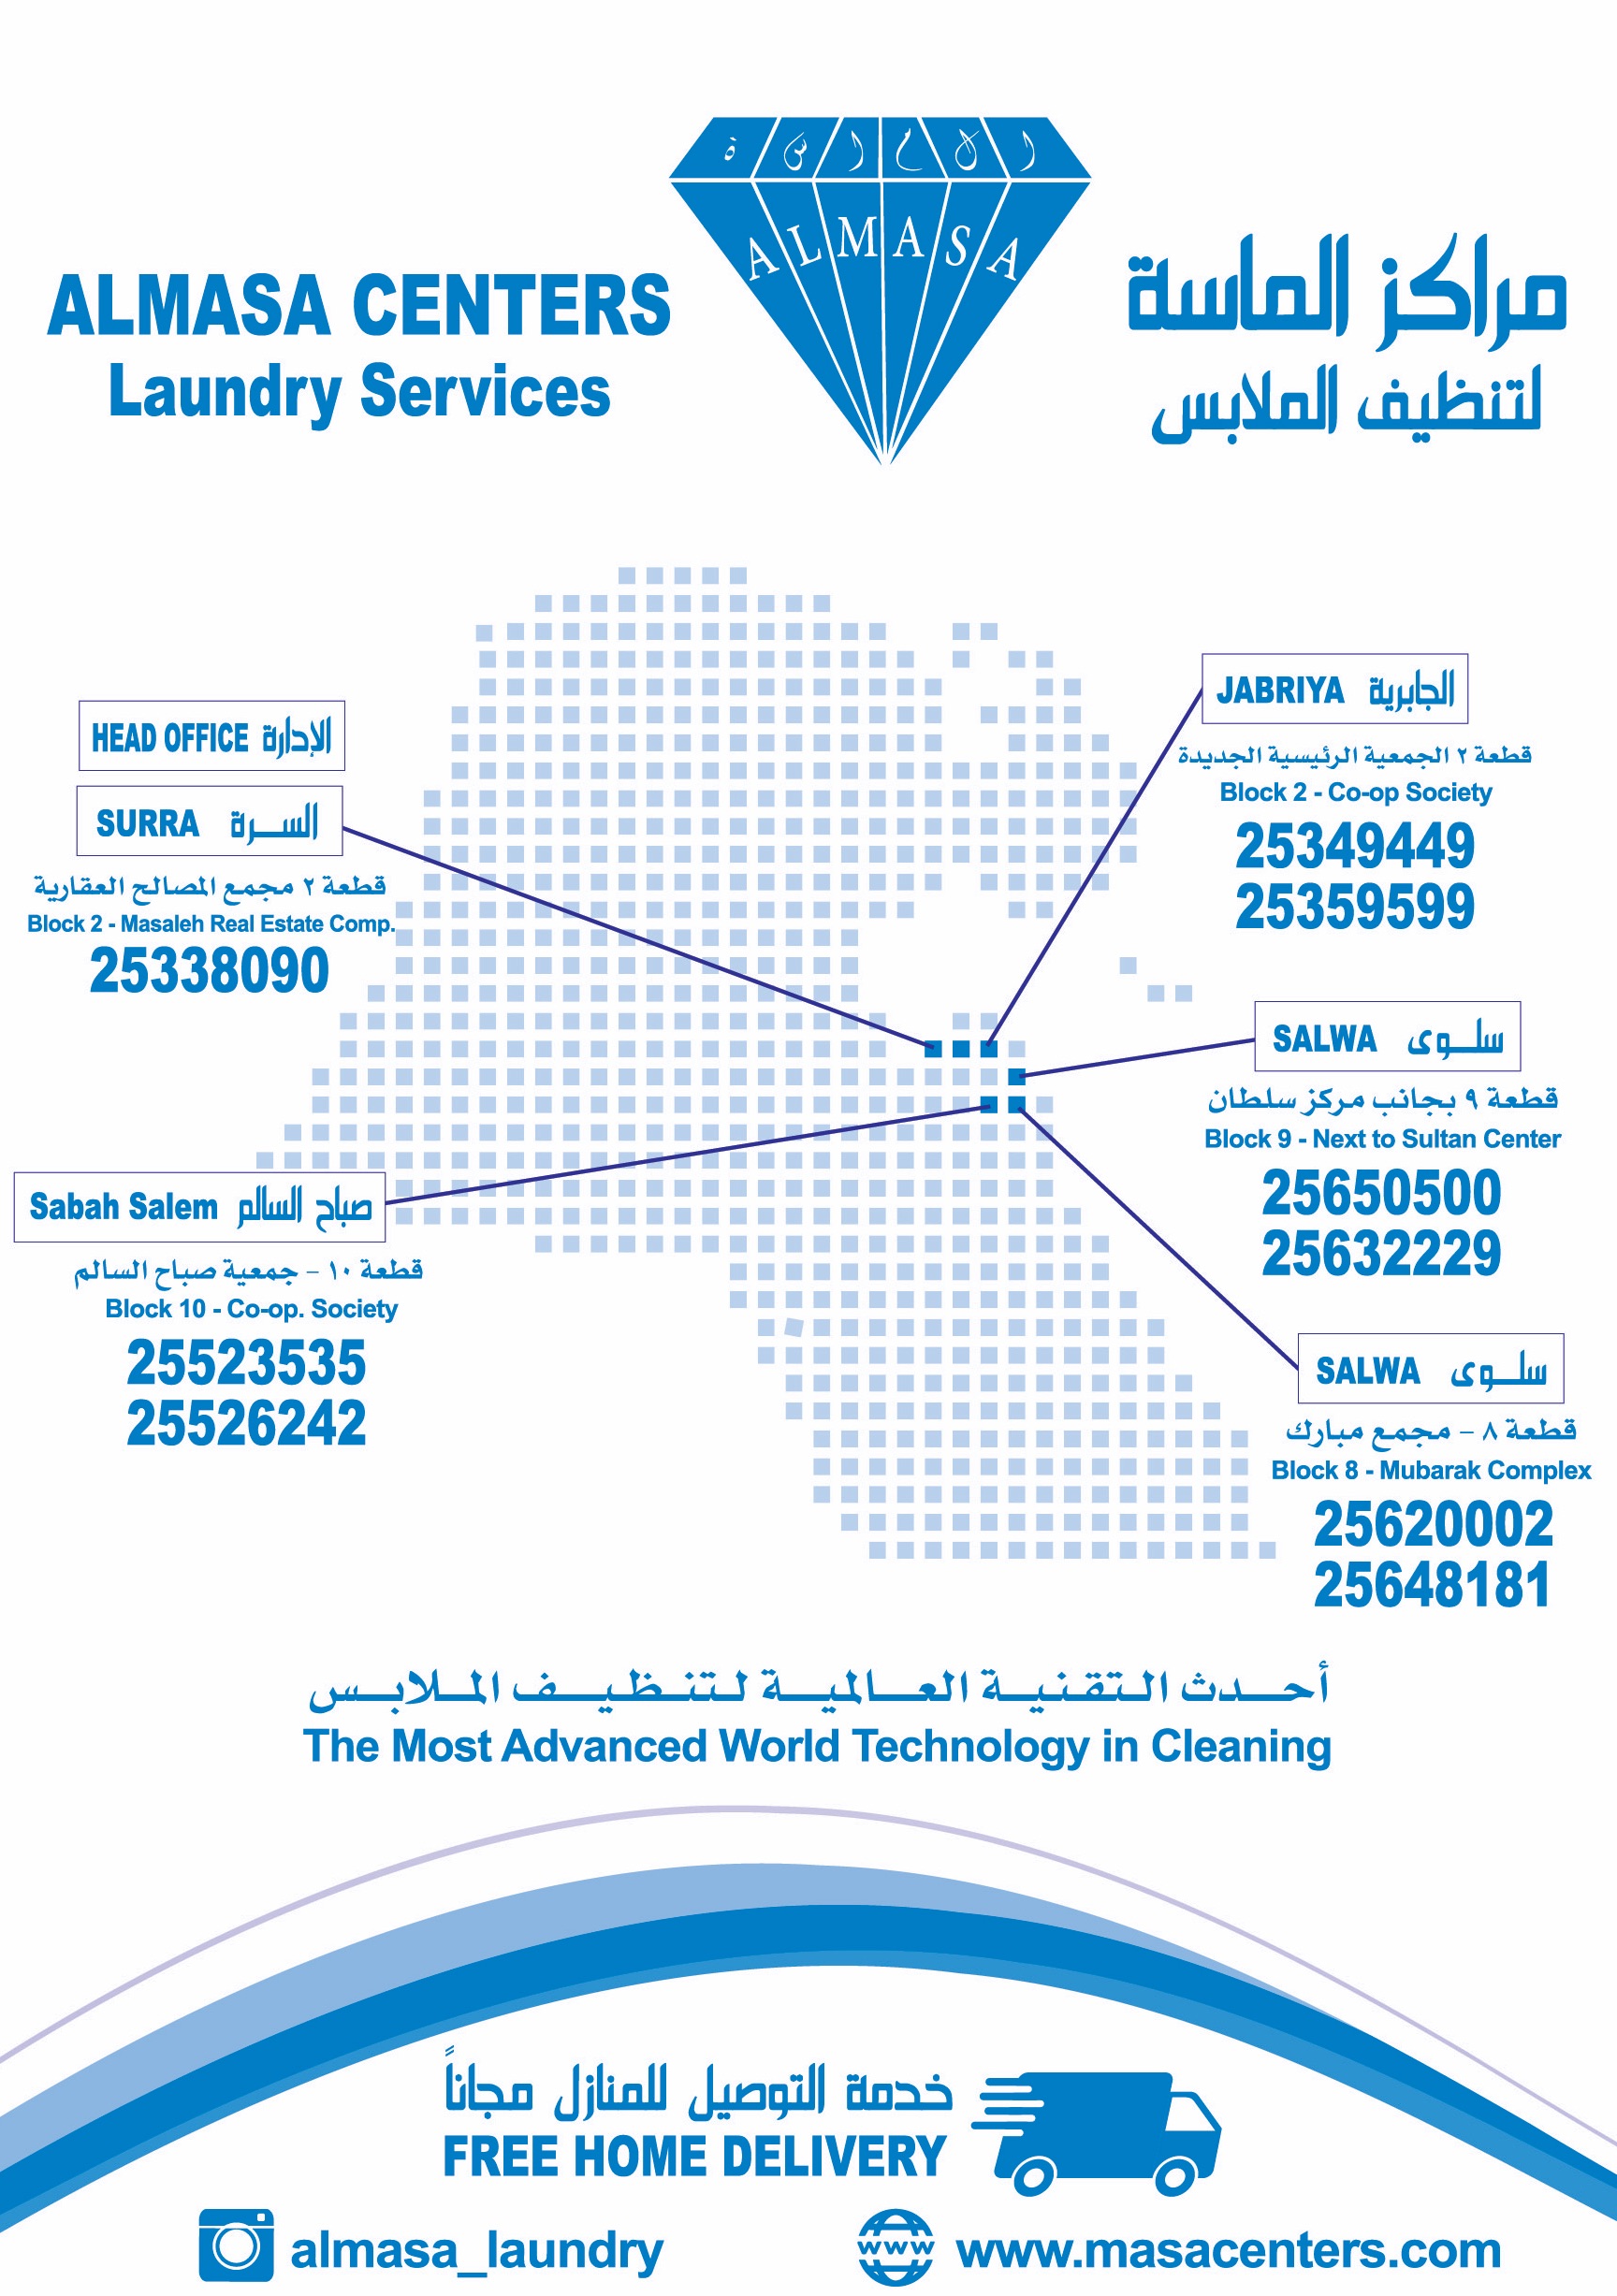 AlMasa Laundry Centers